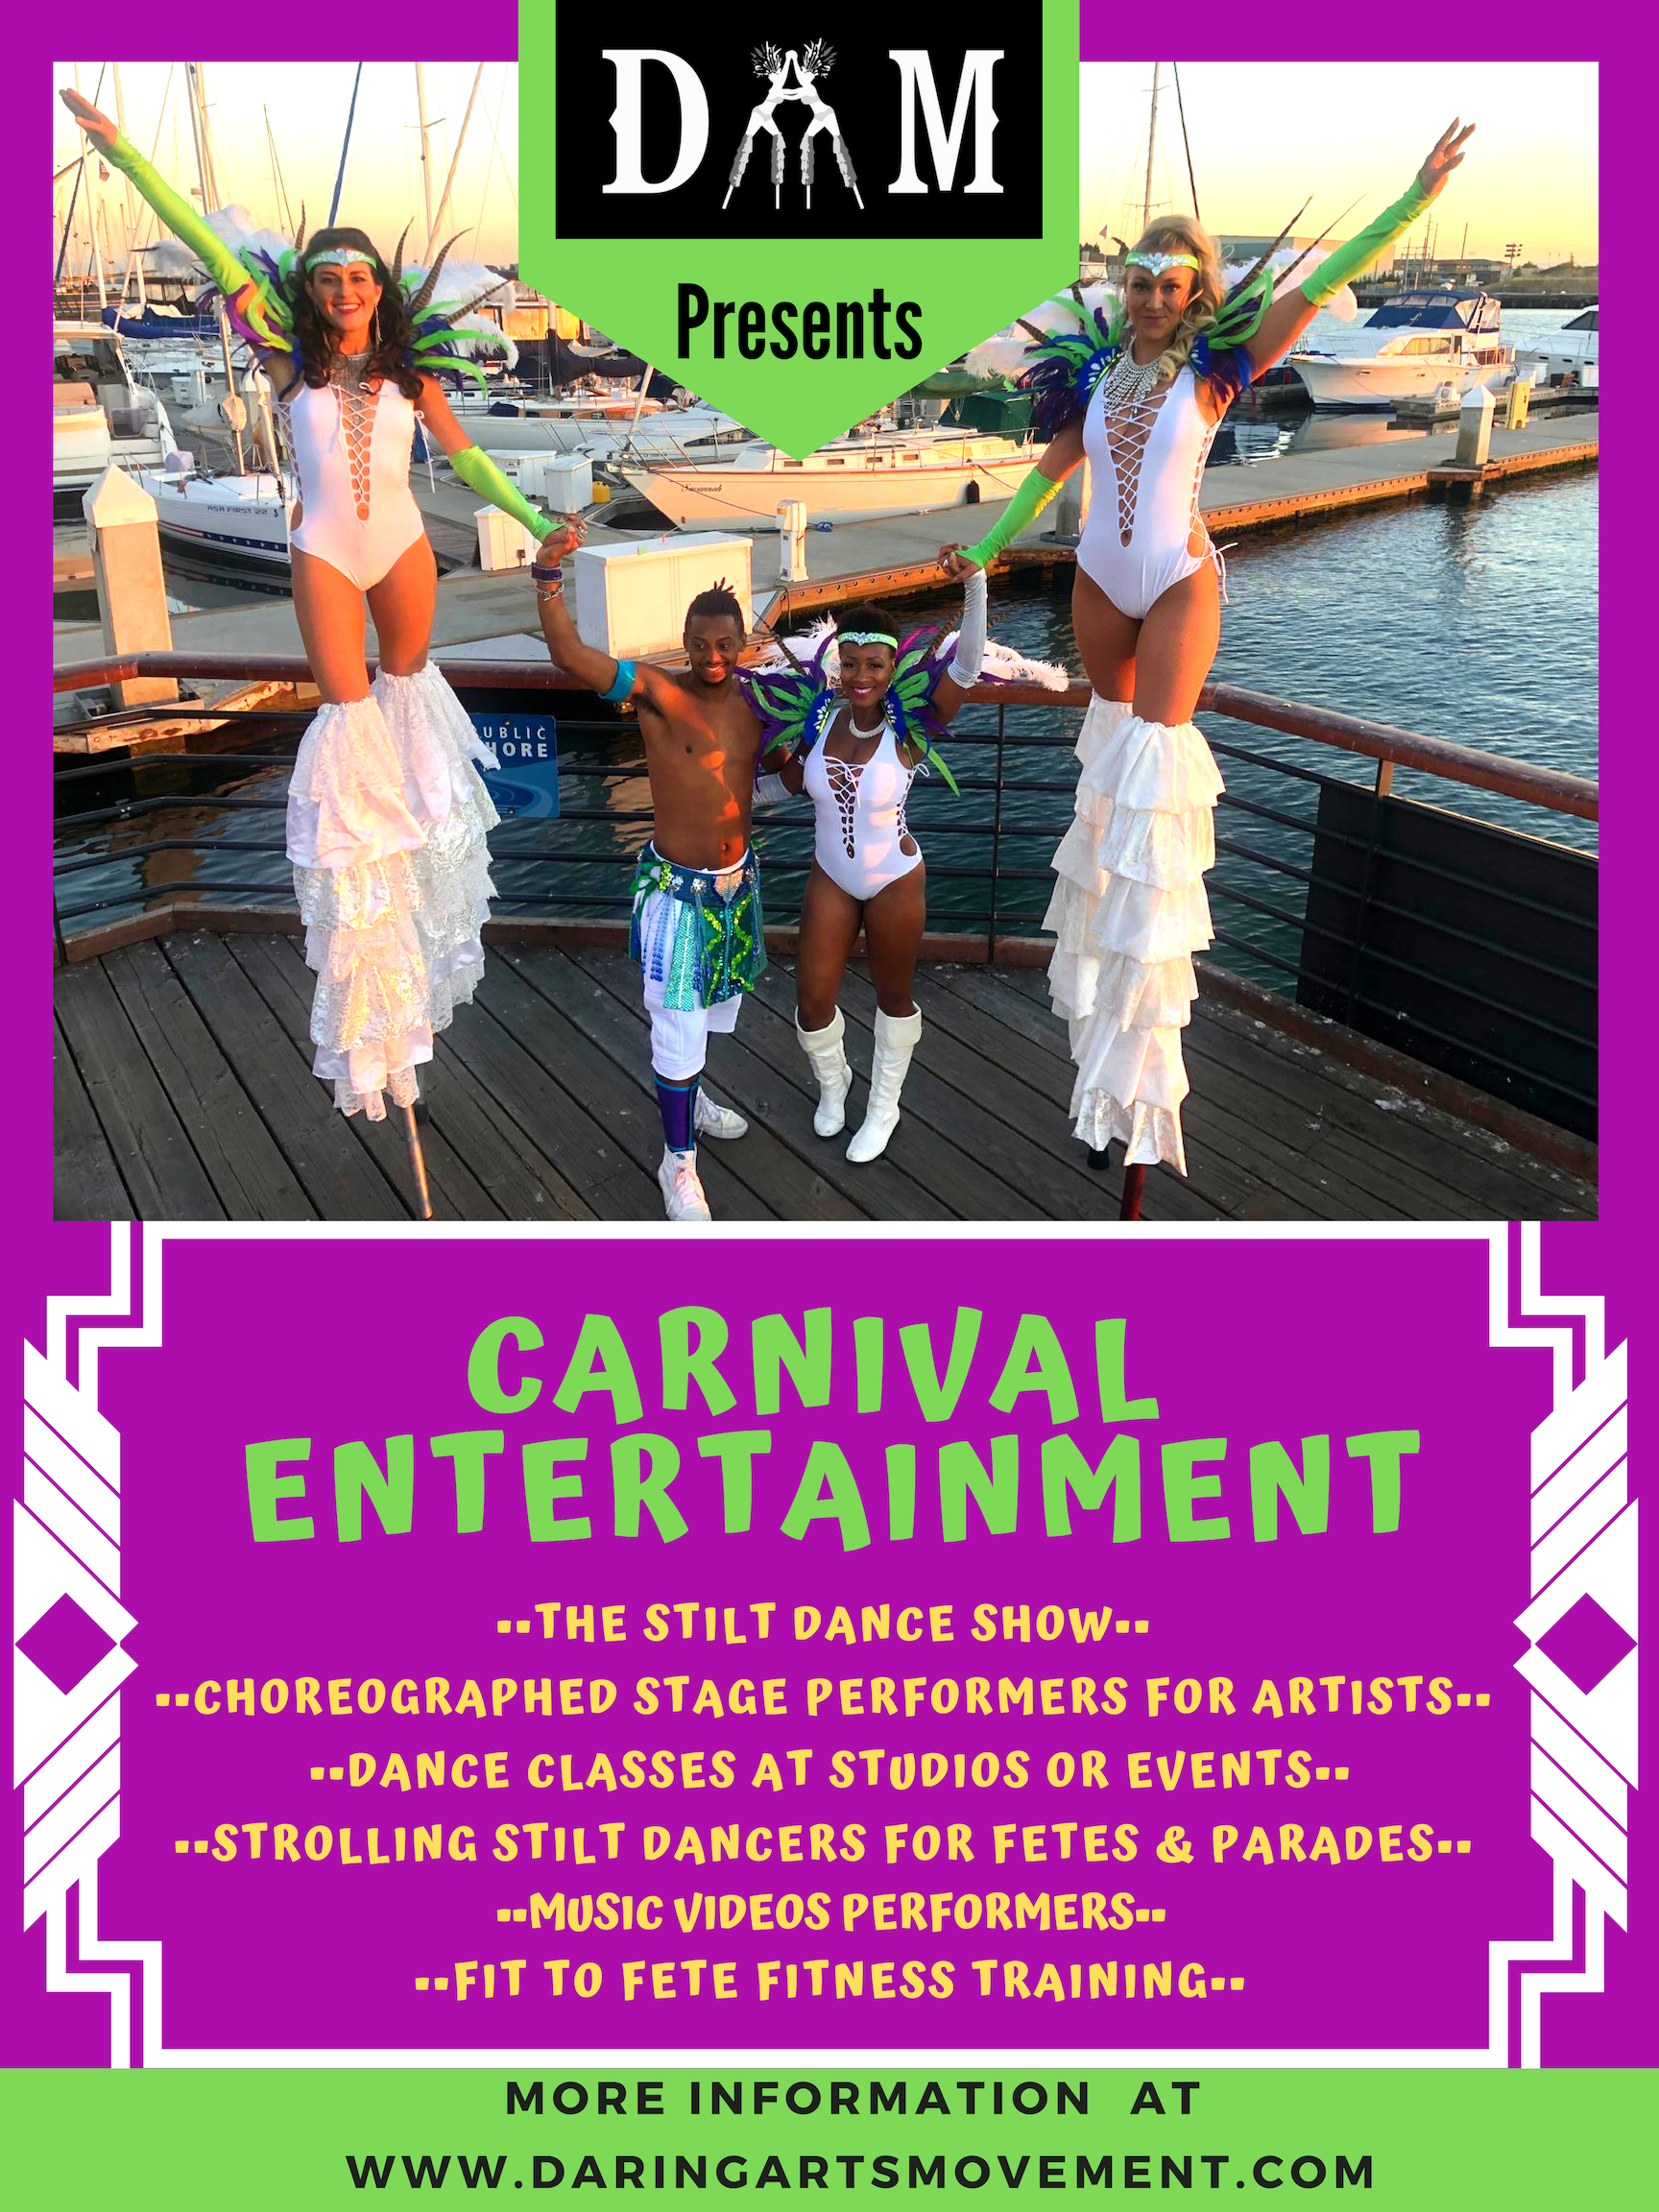 DAM Carnival Entertainment Flier.jpg